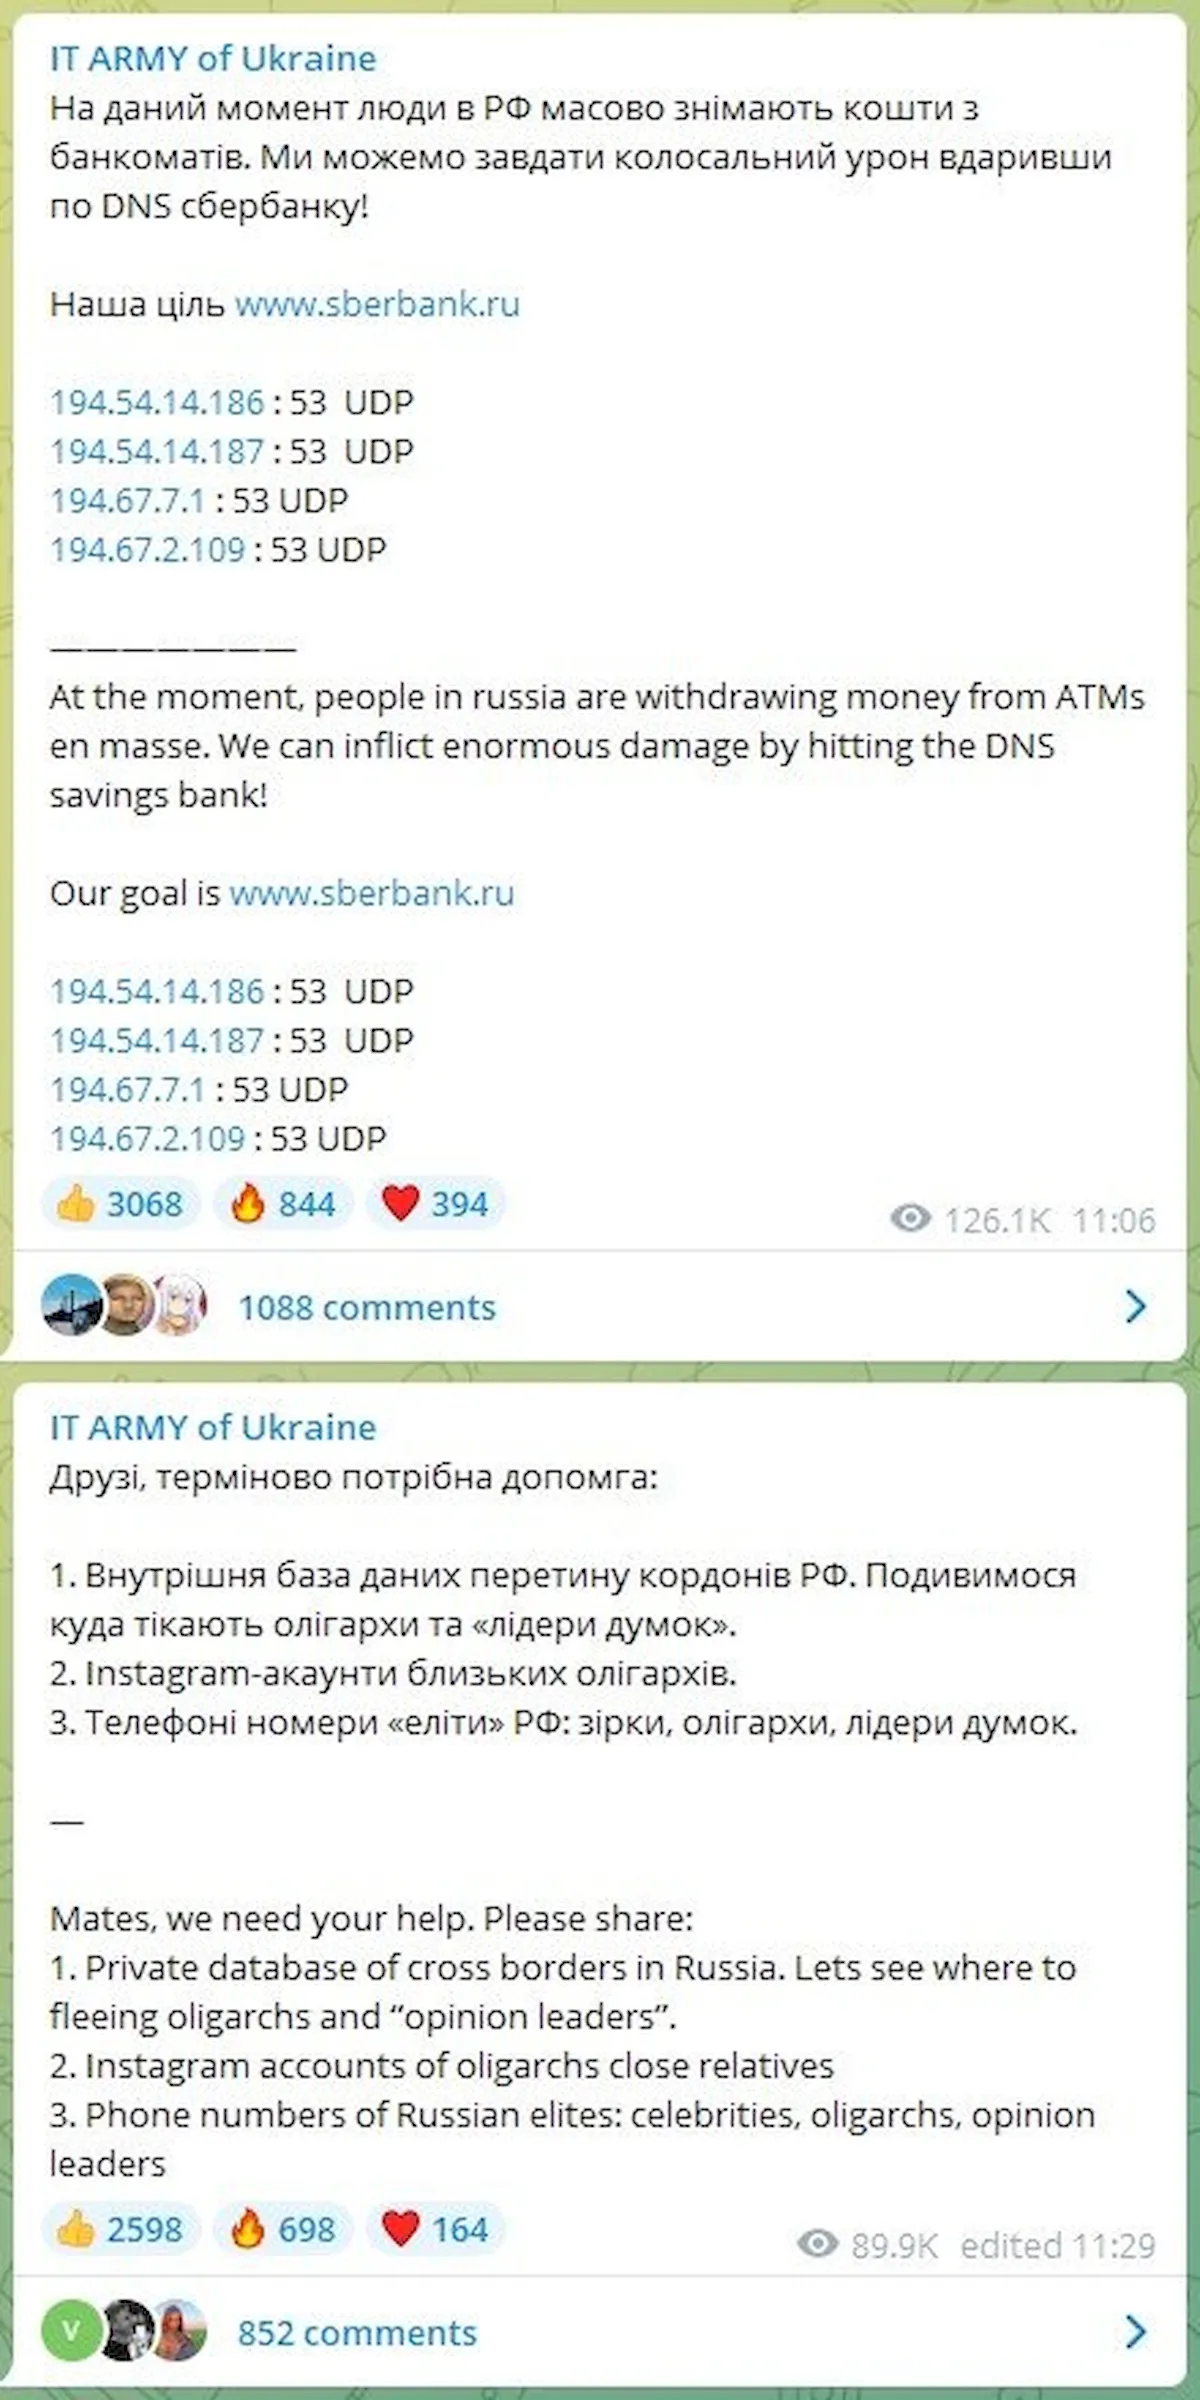 Exército de TI da Ucrânia derrubou os principais sites russos